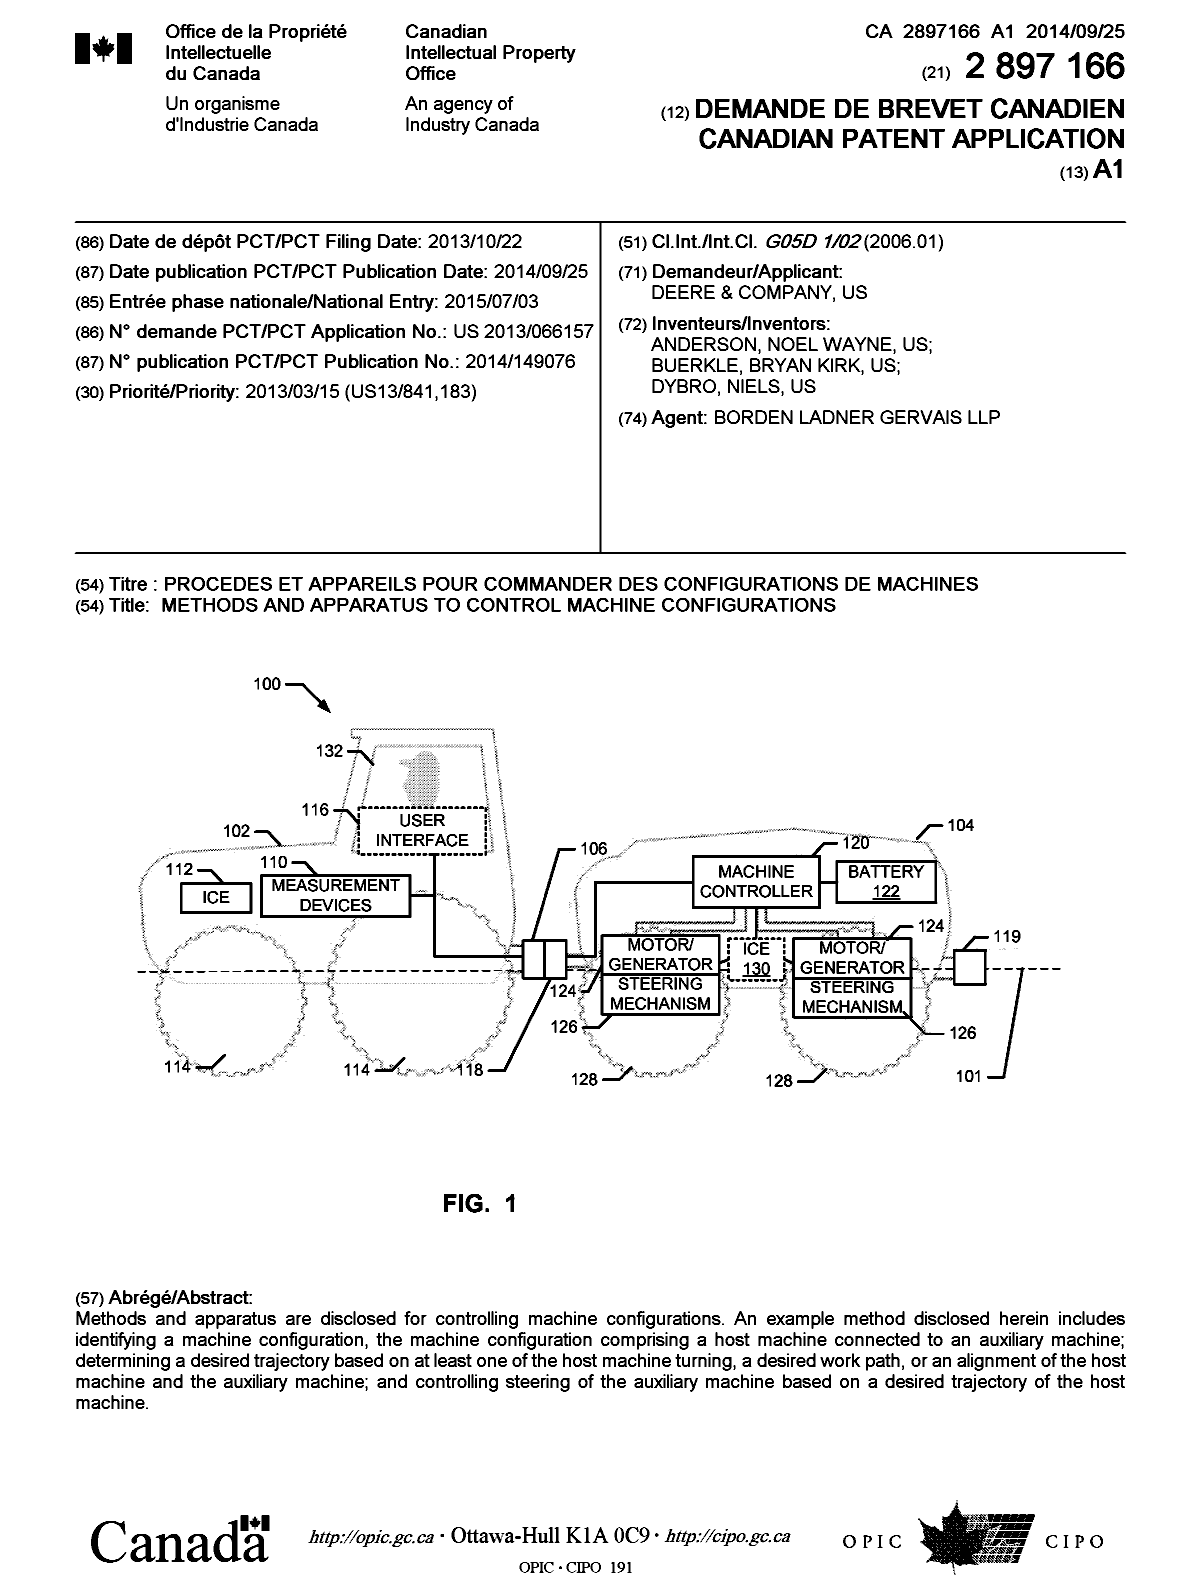 Document de brevet canadien 2897166. Page couverture 20141205. Image 1 de 1